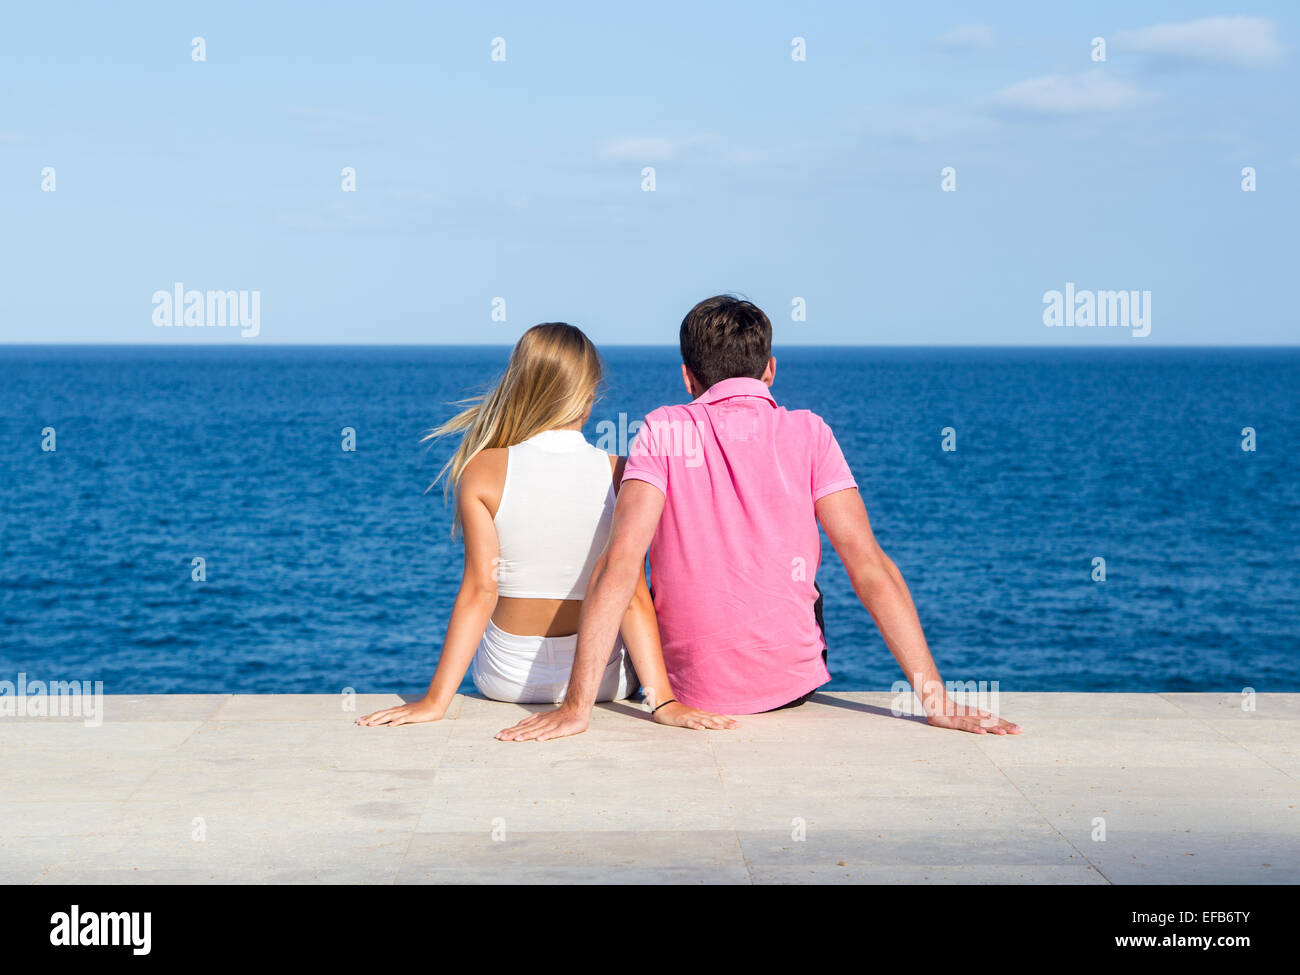 naturist beach amateur couple positions